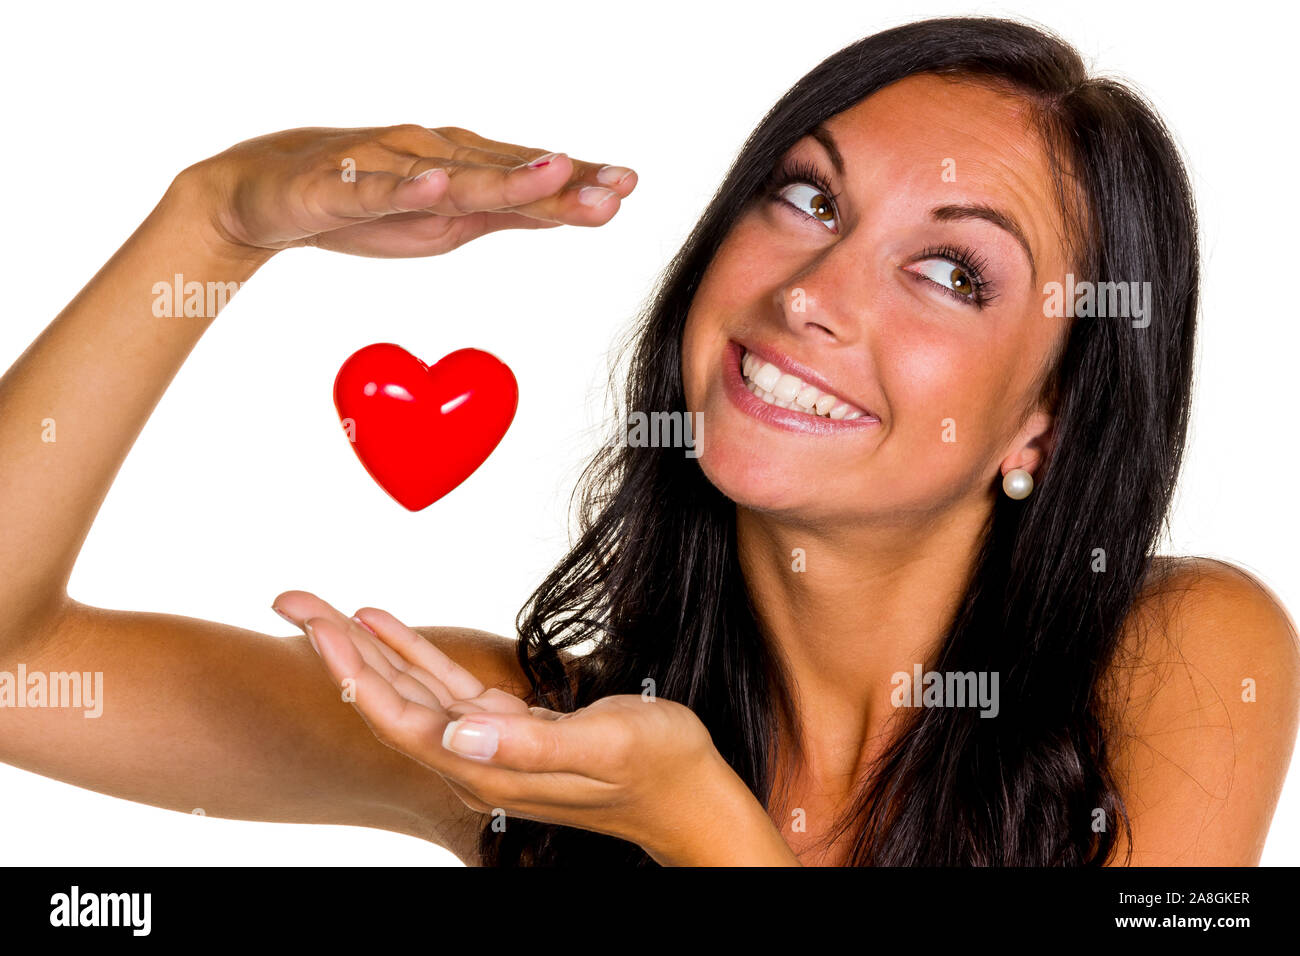 Eine verliebte junge Frau hält ein Herz in der mano, 20, 25, Jahre, signor: Sì Foto Stock